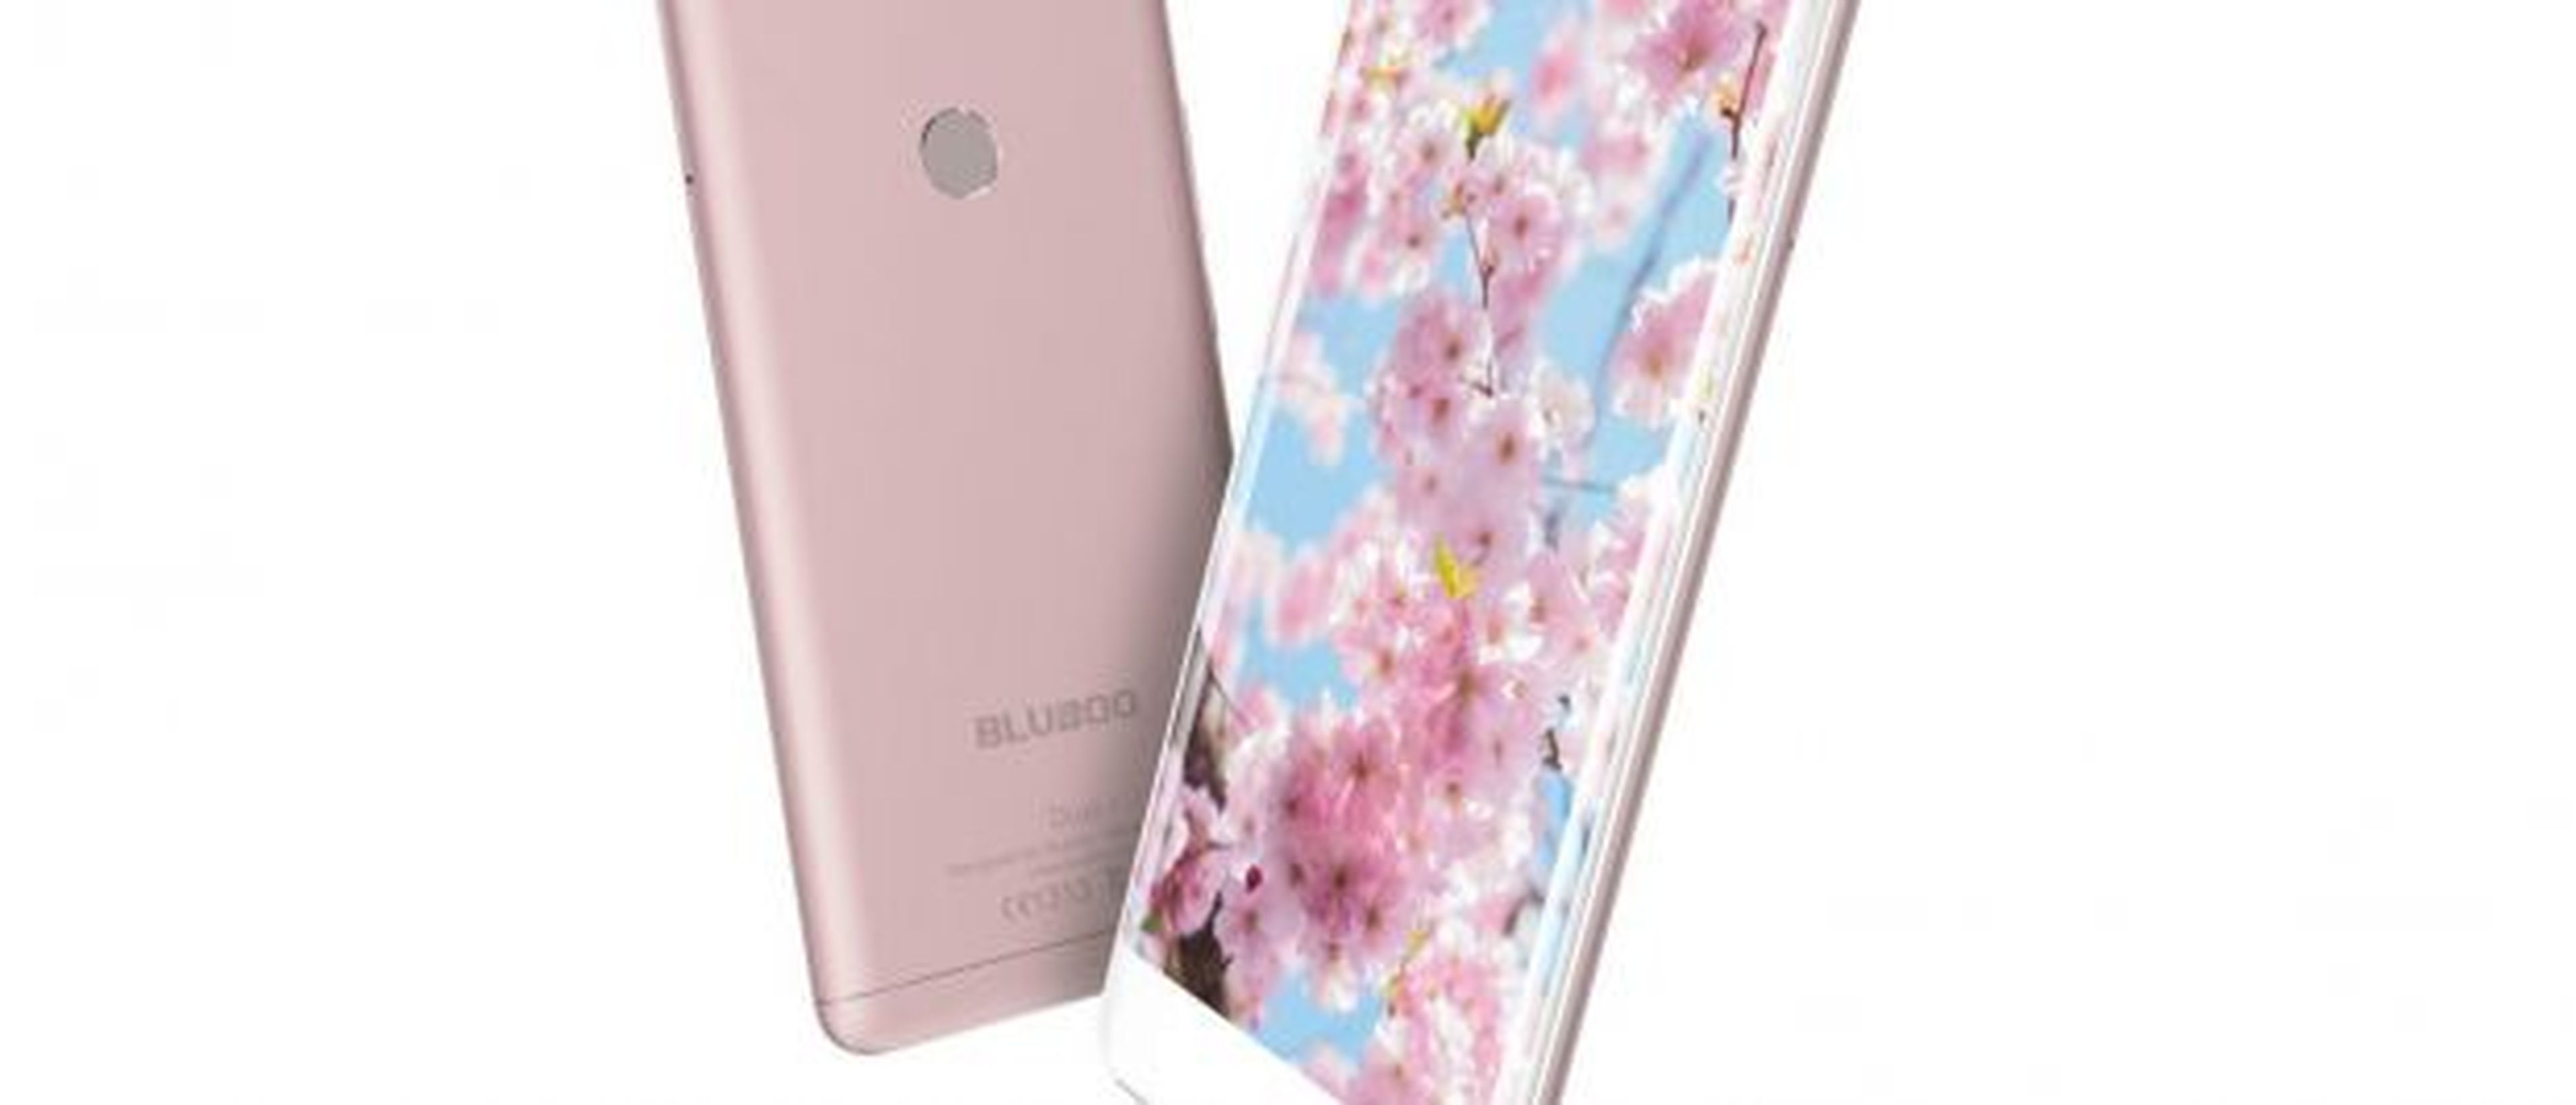 Otras de las grandes apuestas de Bluboo en lo que a smartphones Android con componentes innovadores se refiere es el Bluboo Dual